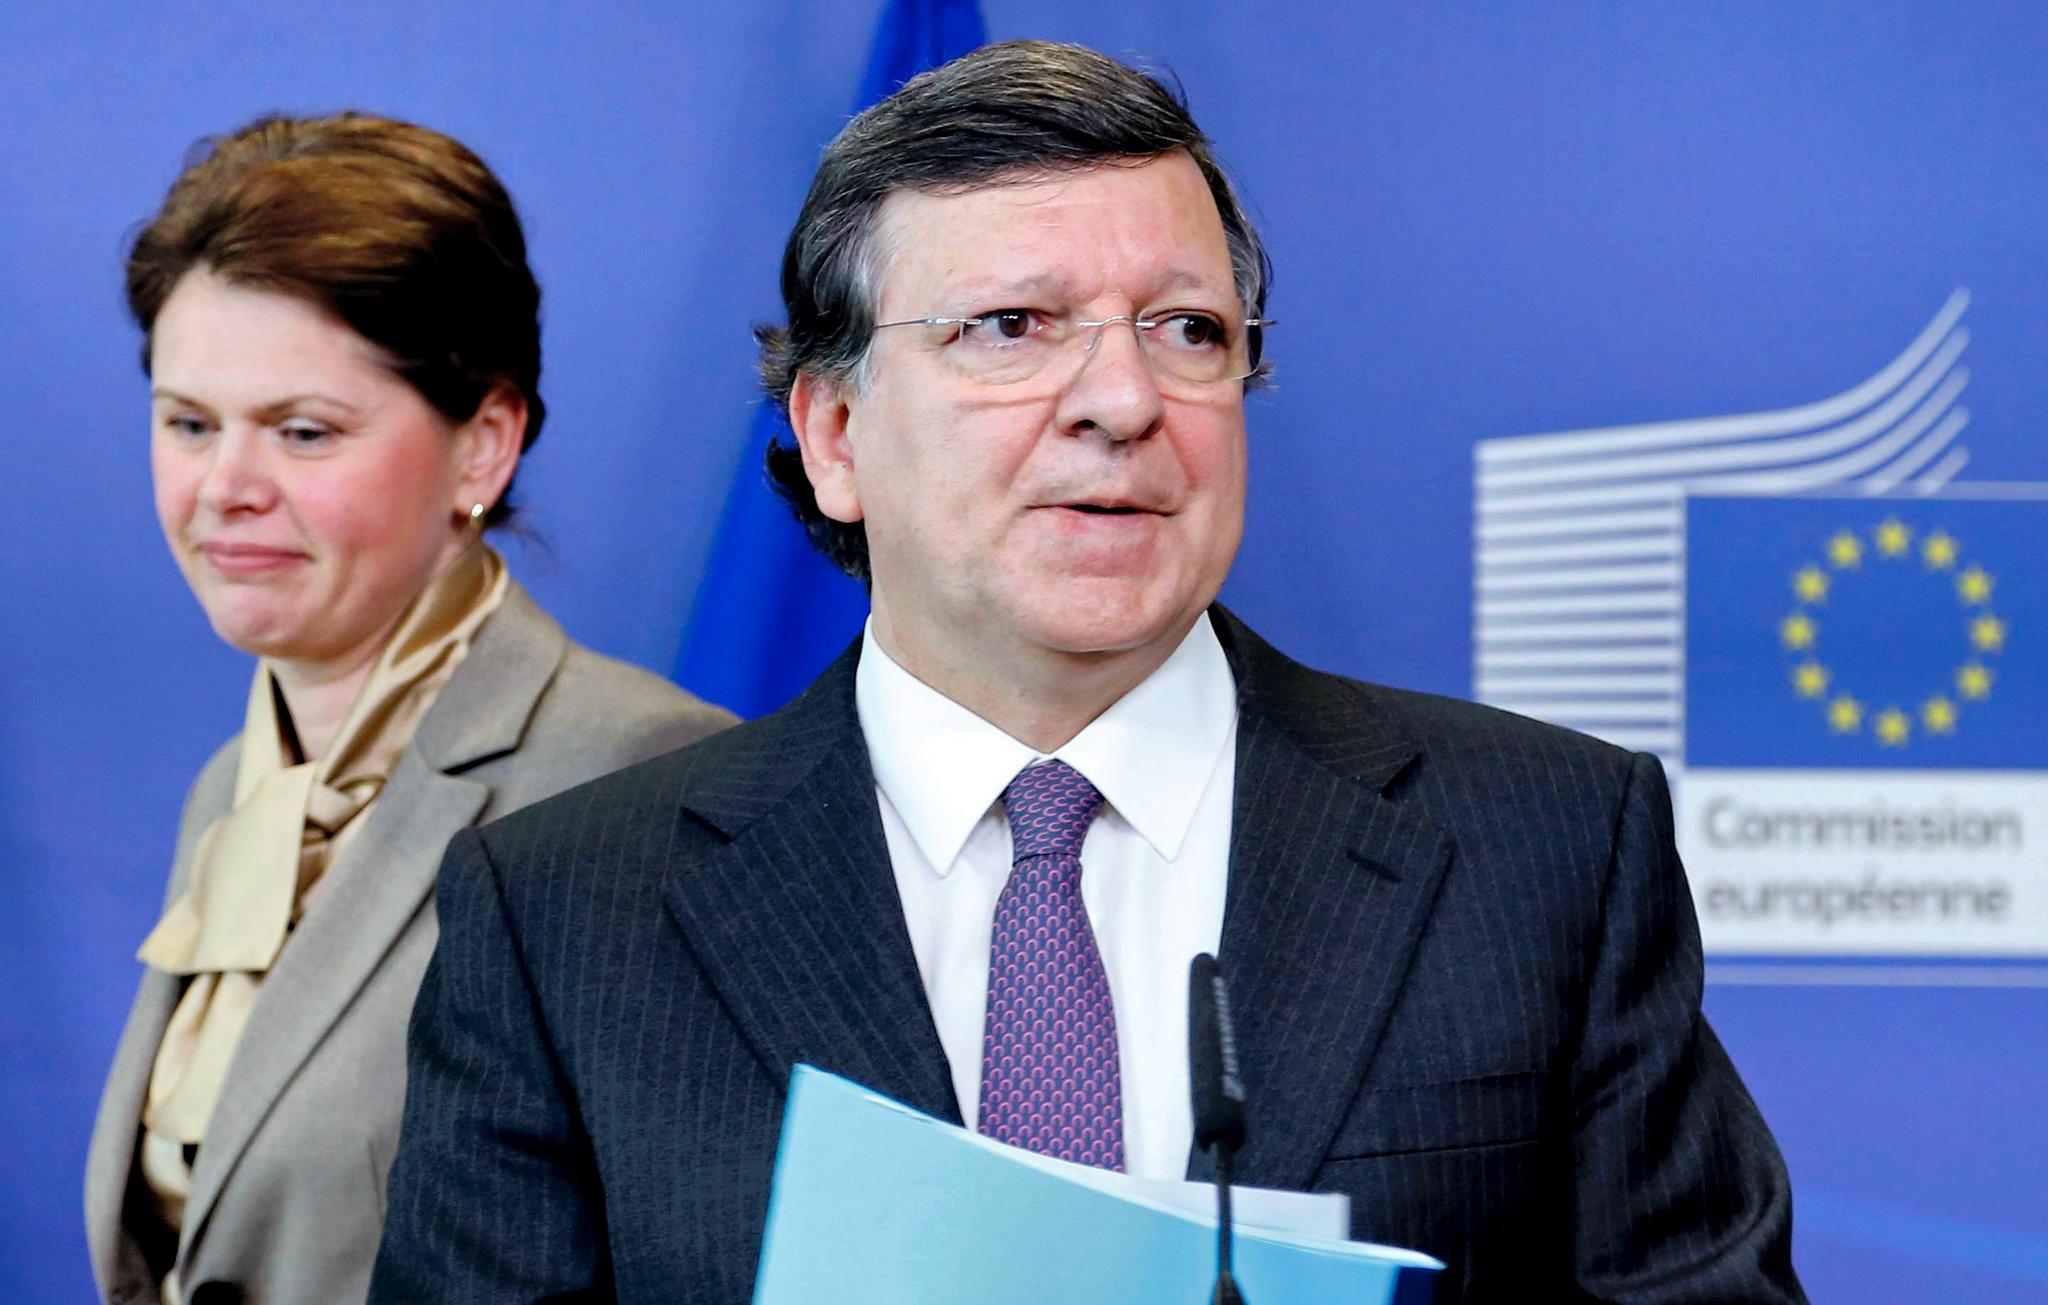 Statsminister Alenka Bratusek har vært statsminister i bare et par måneder, men har vært i Brussel  for å forsøke å overbevise EU-kommisjonens leder José Manuel Barroso om at landet har kontroll med statsfinansene.